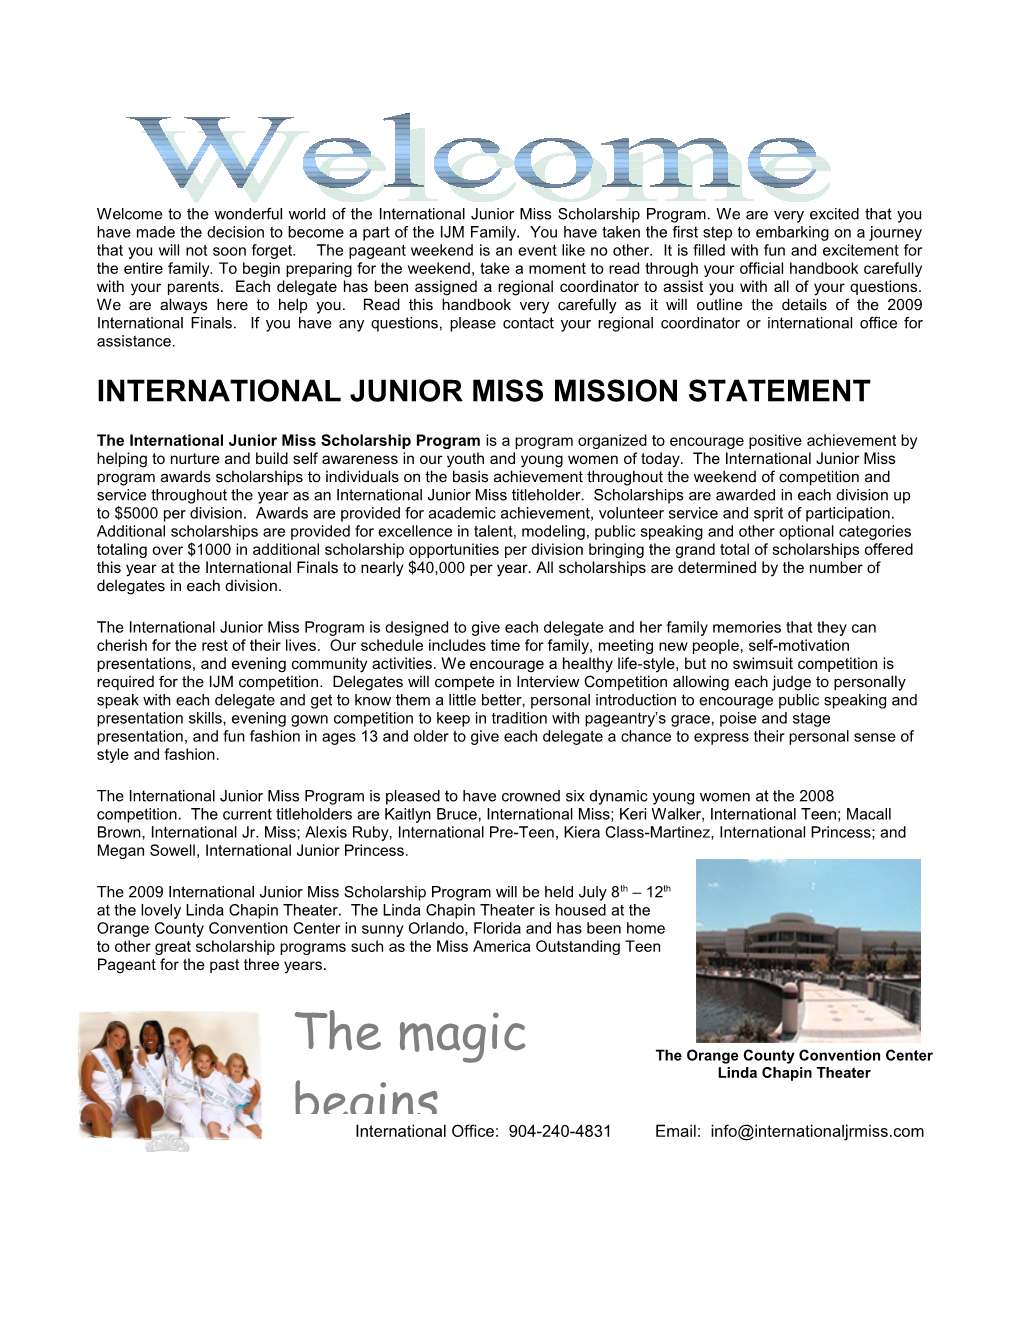 International Junior Miss Mission Statement